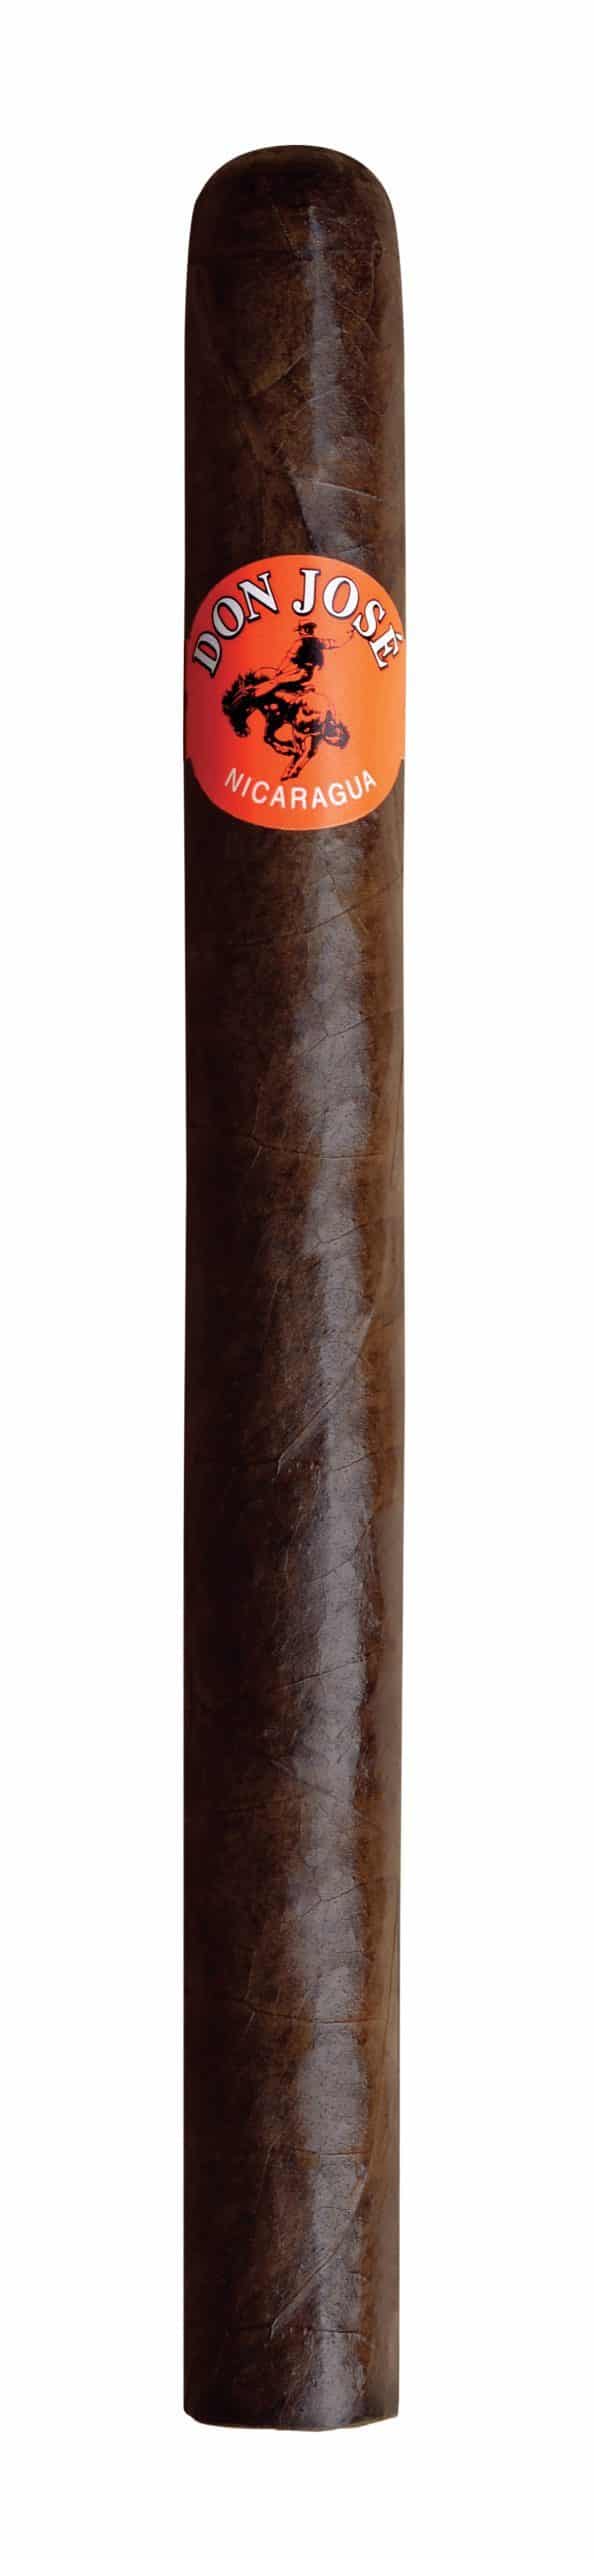 don jose el grandee maduro single cigar